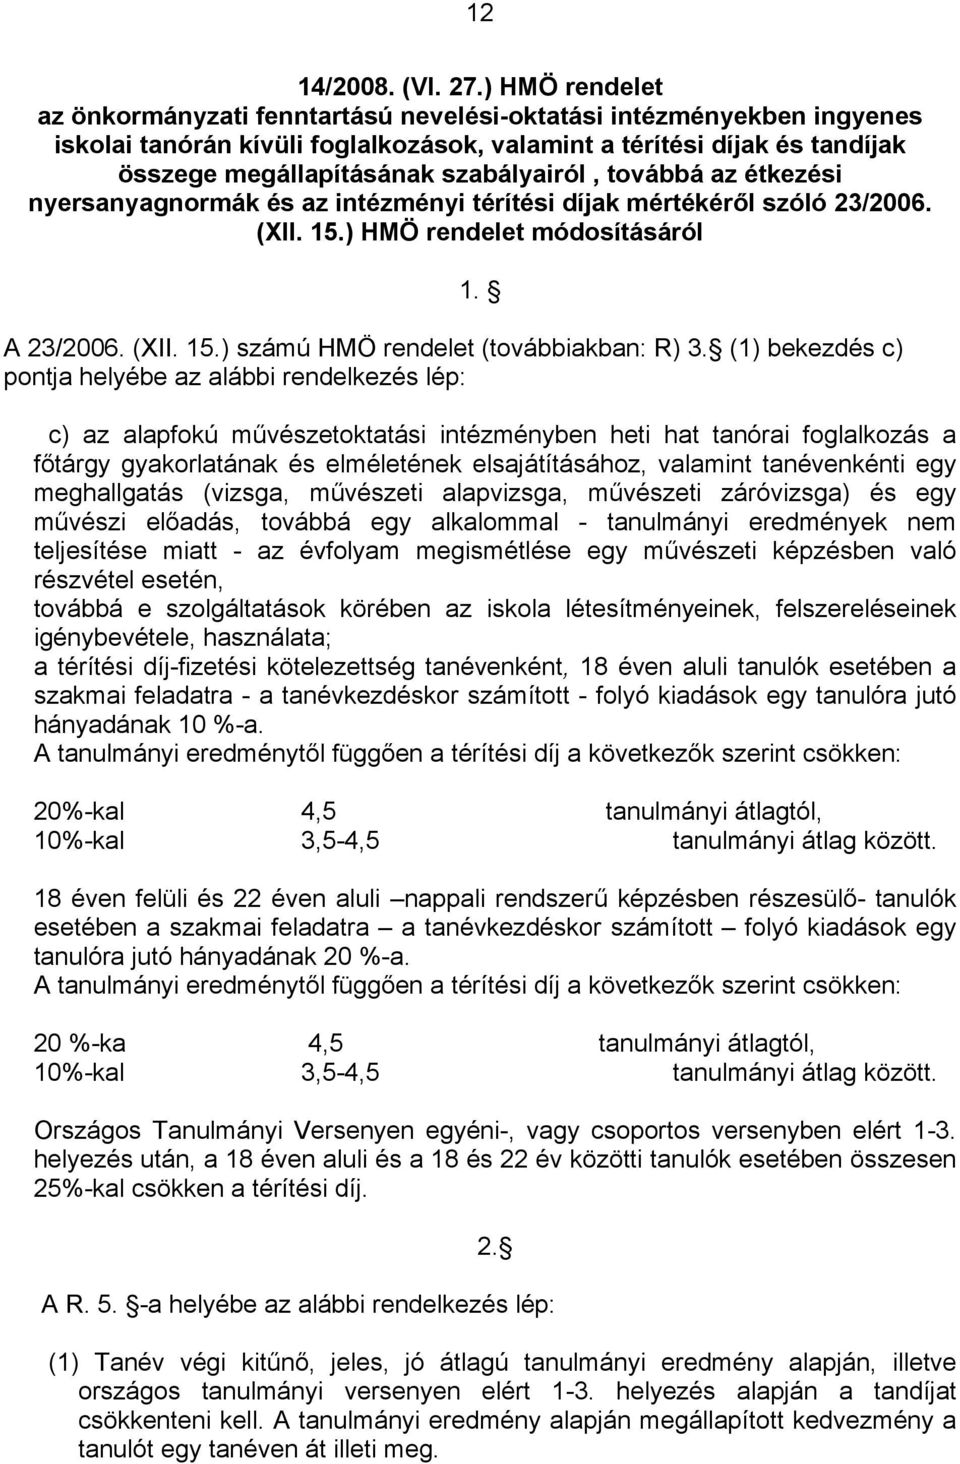 szabályairól, továbbá az étkezési nyersanyagnormák és az intézményi térítési díjak mértékéről szóló 23/2006. (XII. 15.) HMÖ rendelet módosításáról A 23/2006. (XII. 15.) számú HMÖ rendelet (továbbiakban: R) 3.